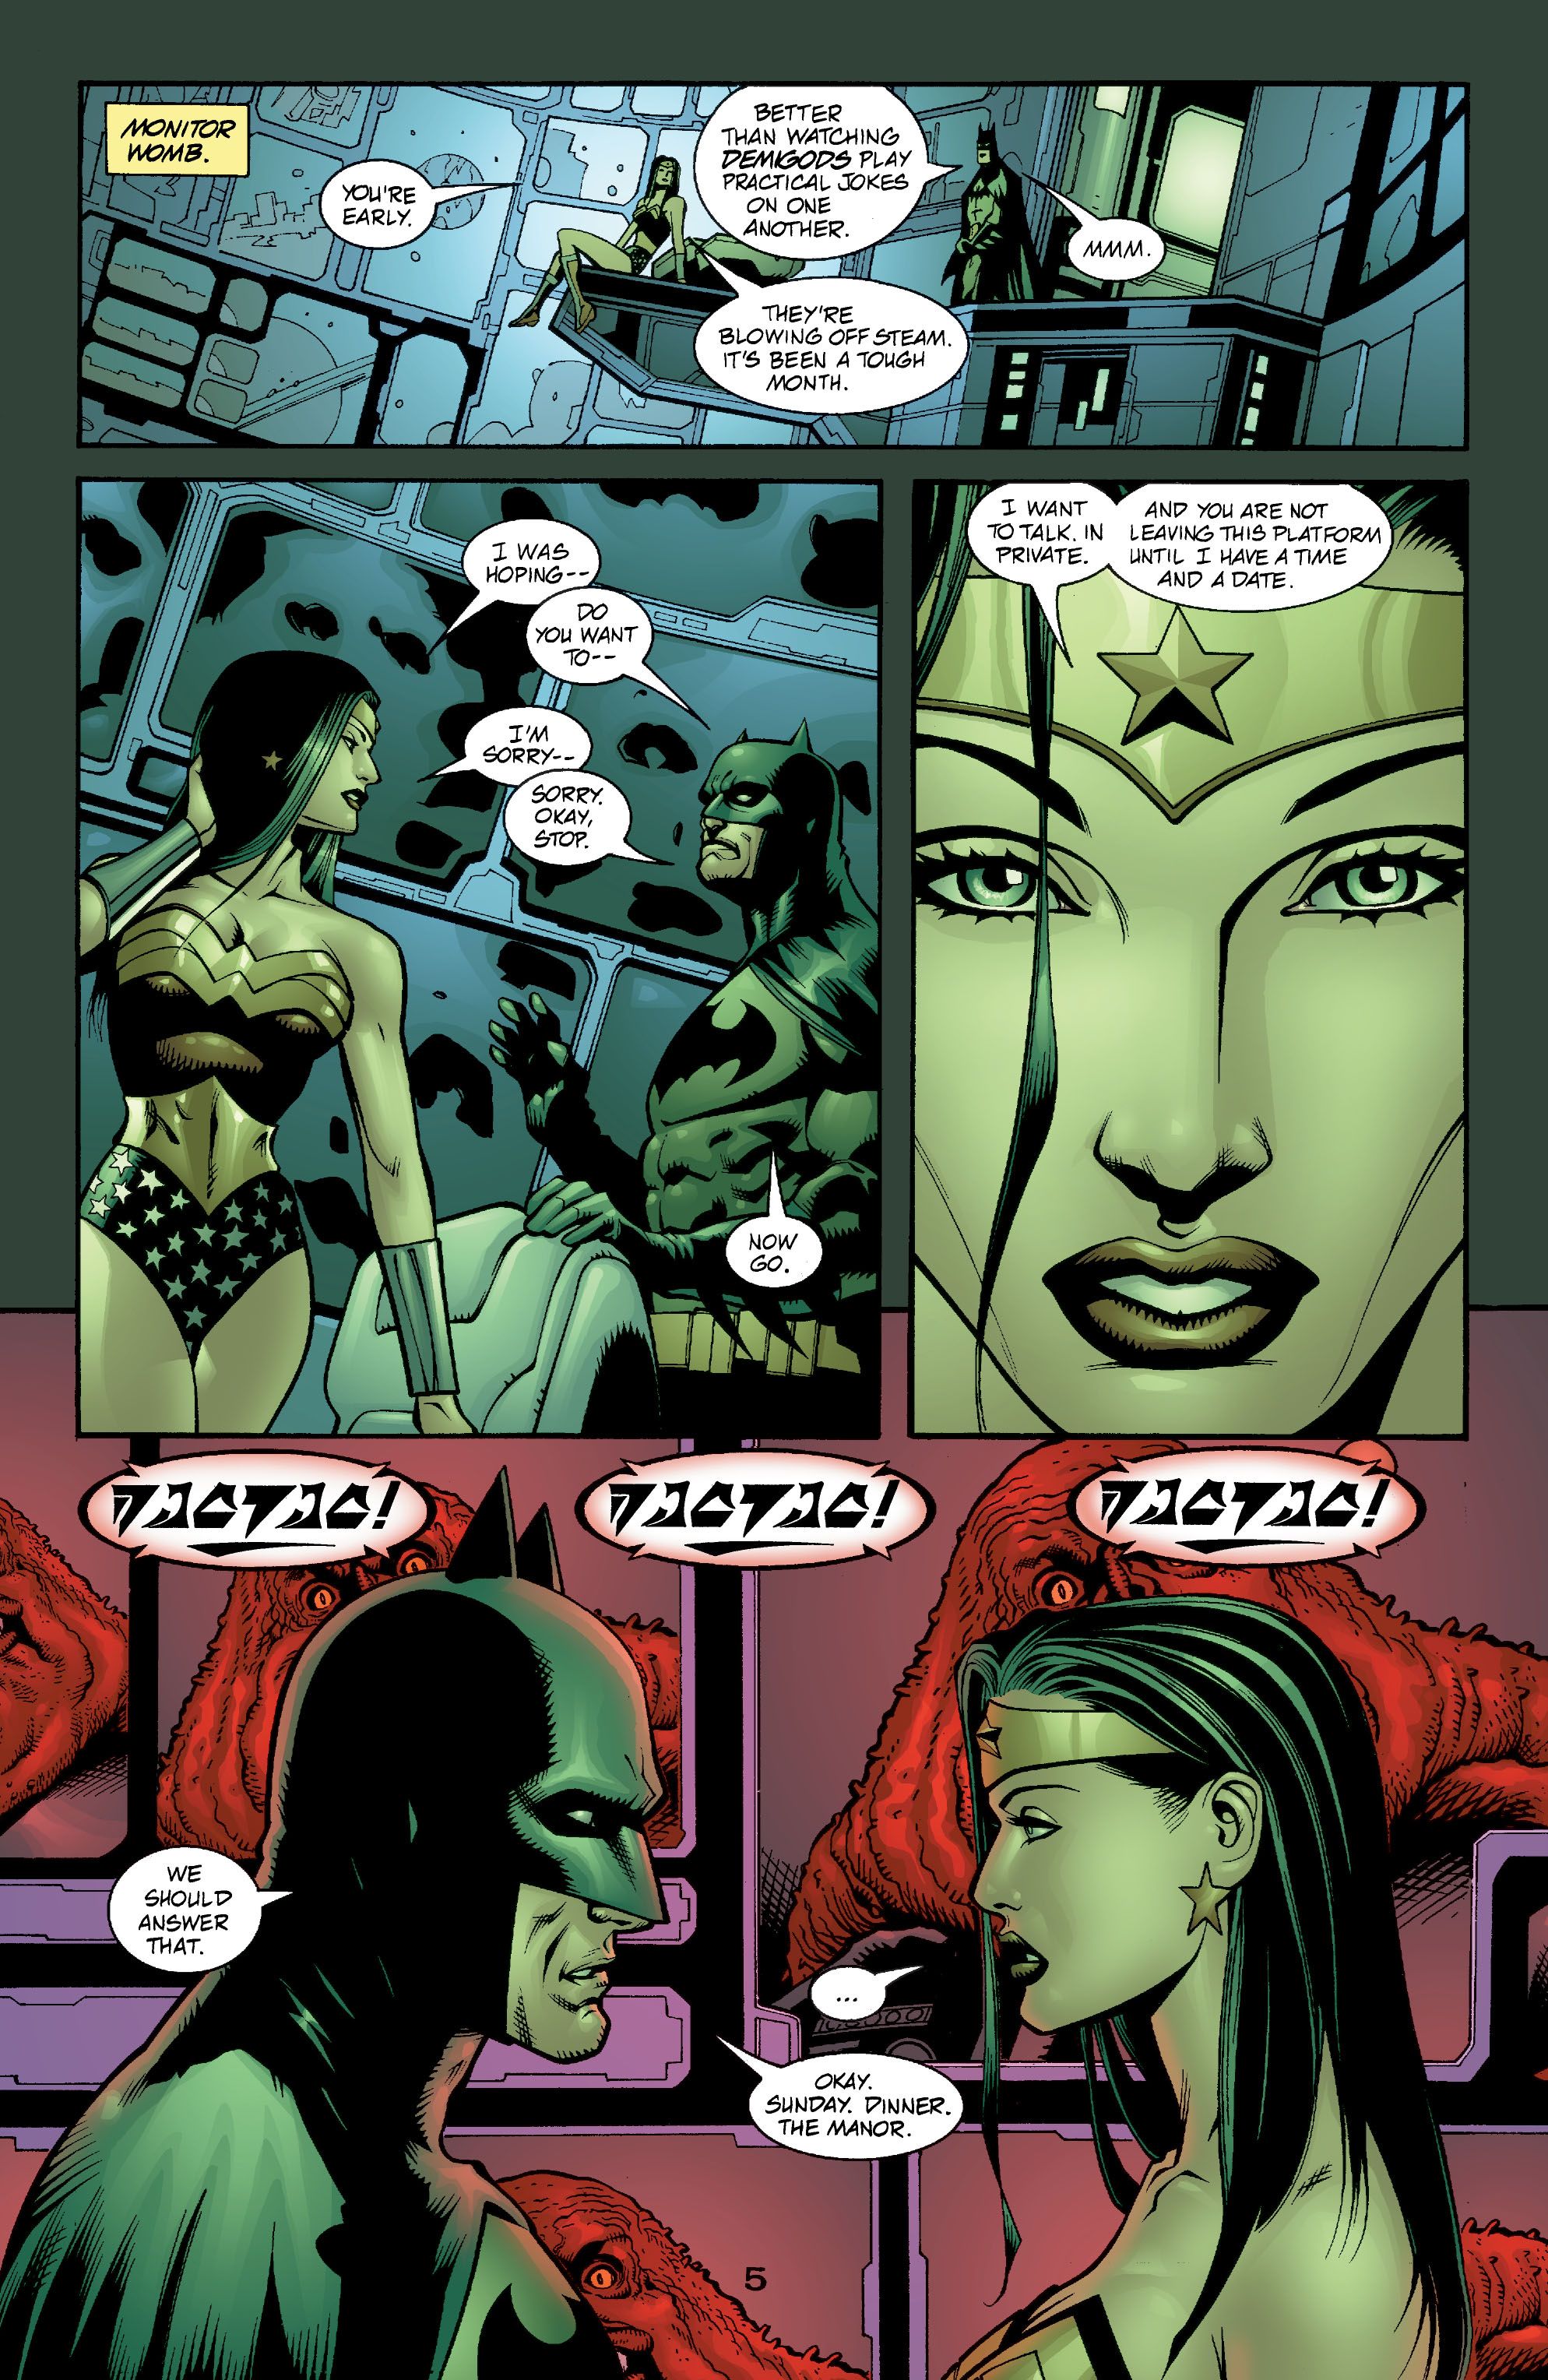 Wonder Woman mówi Batmanowi, żeby zaprosił ją na randkę